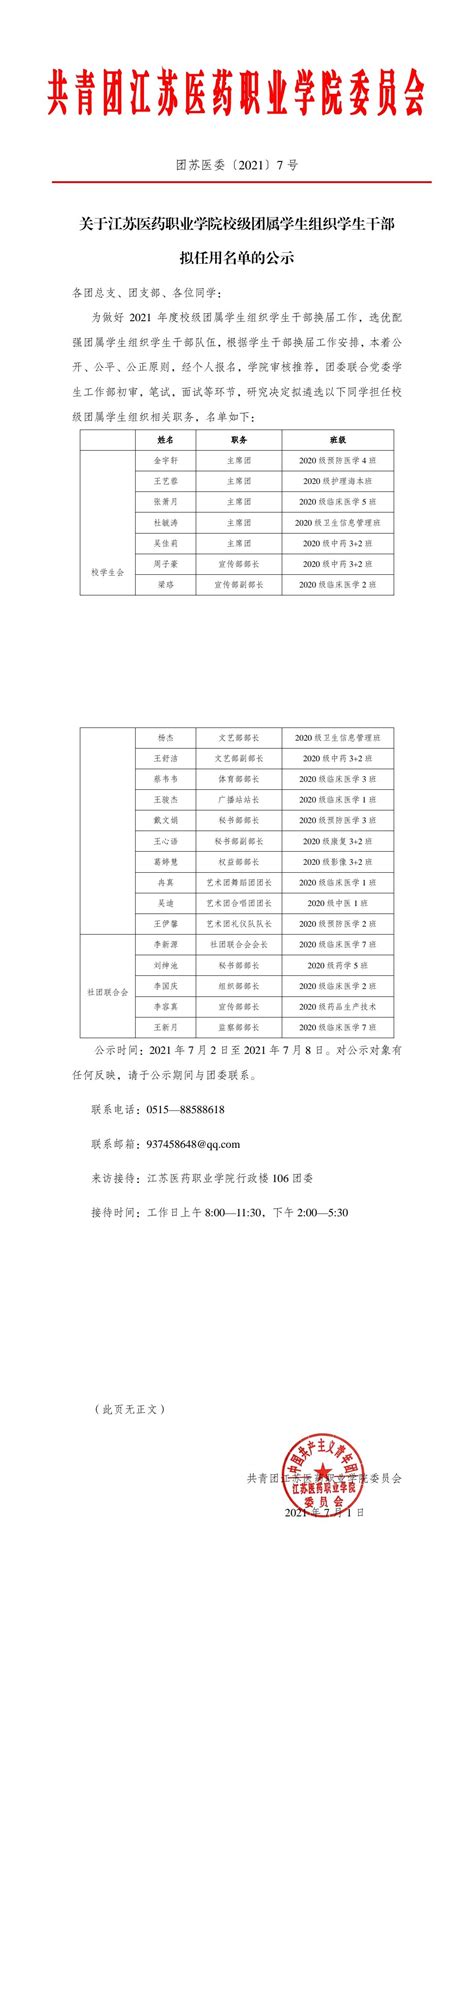 关于江苏医药职业学院校级团属学生组织学生干部拟任用名单的公示